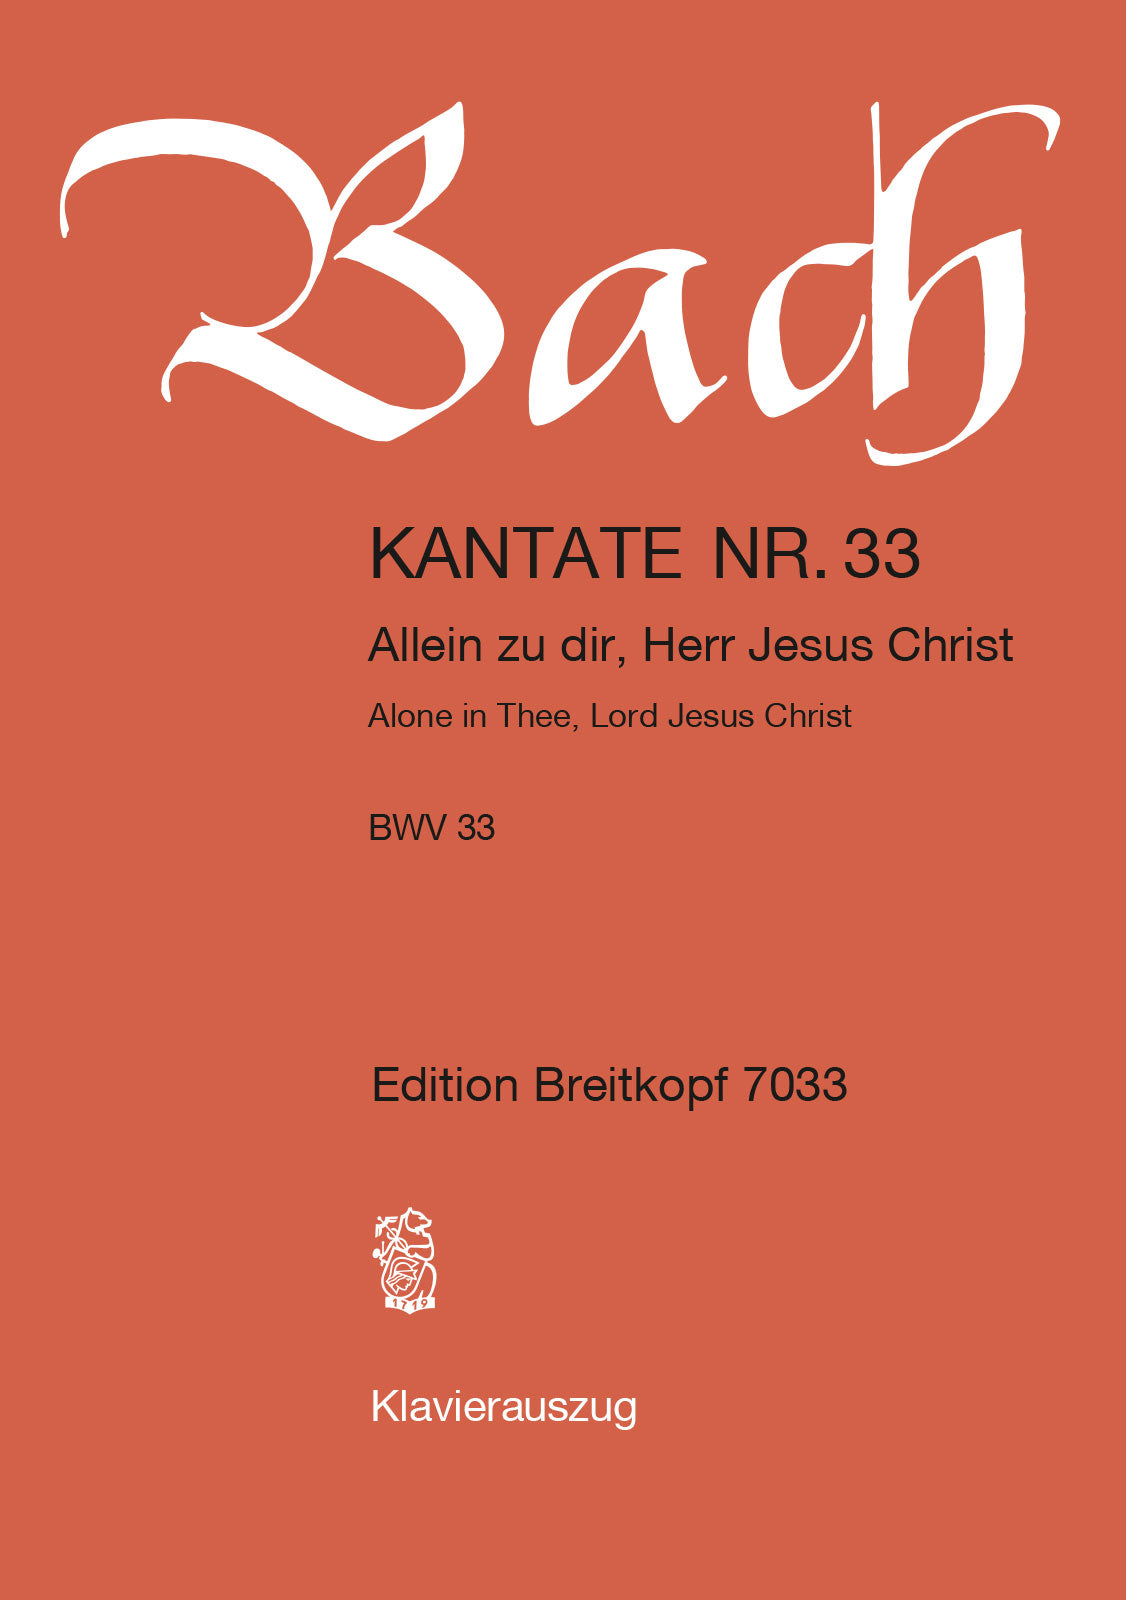 Bach: Allein zu dir, Herr Jesus Christ, BWV 33